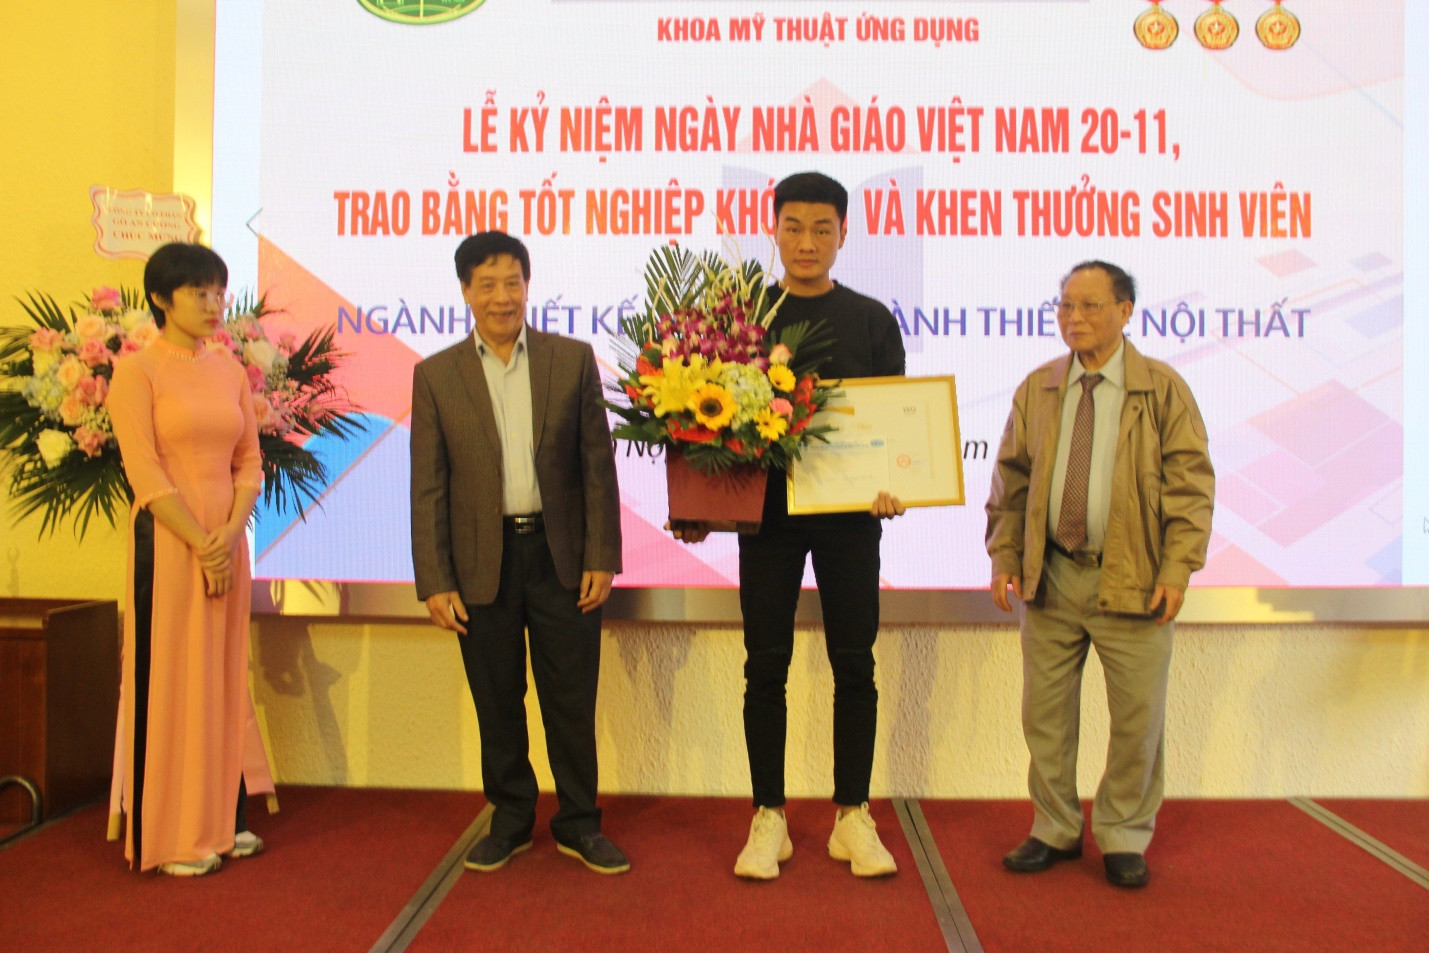 Trường Đại học Kinh doanh và Công nghệ Hà Nội trao bằng tốt nghiệp cho sinh viên K21 và khen thưởng cho sinh viên ngành thiết kế - Ảnh 2.